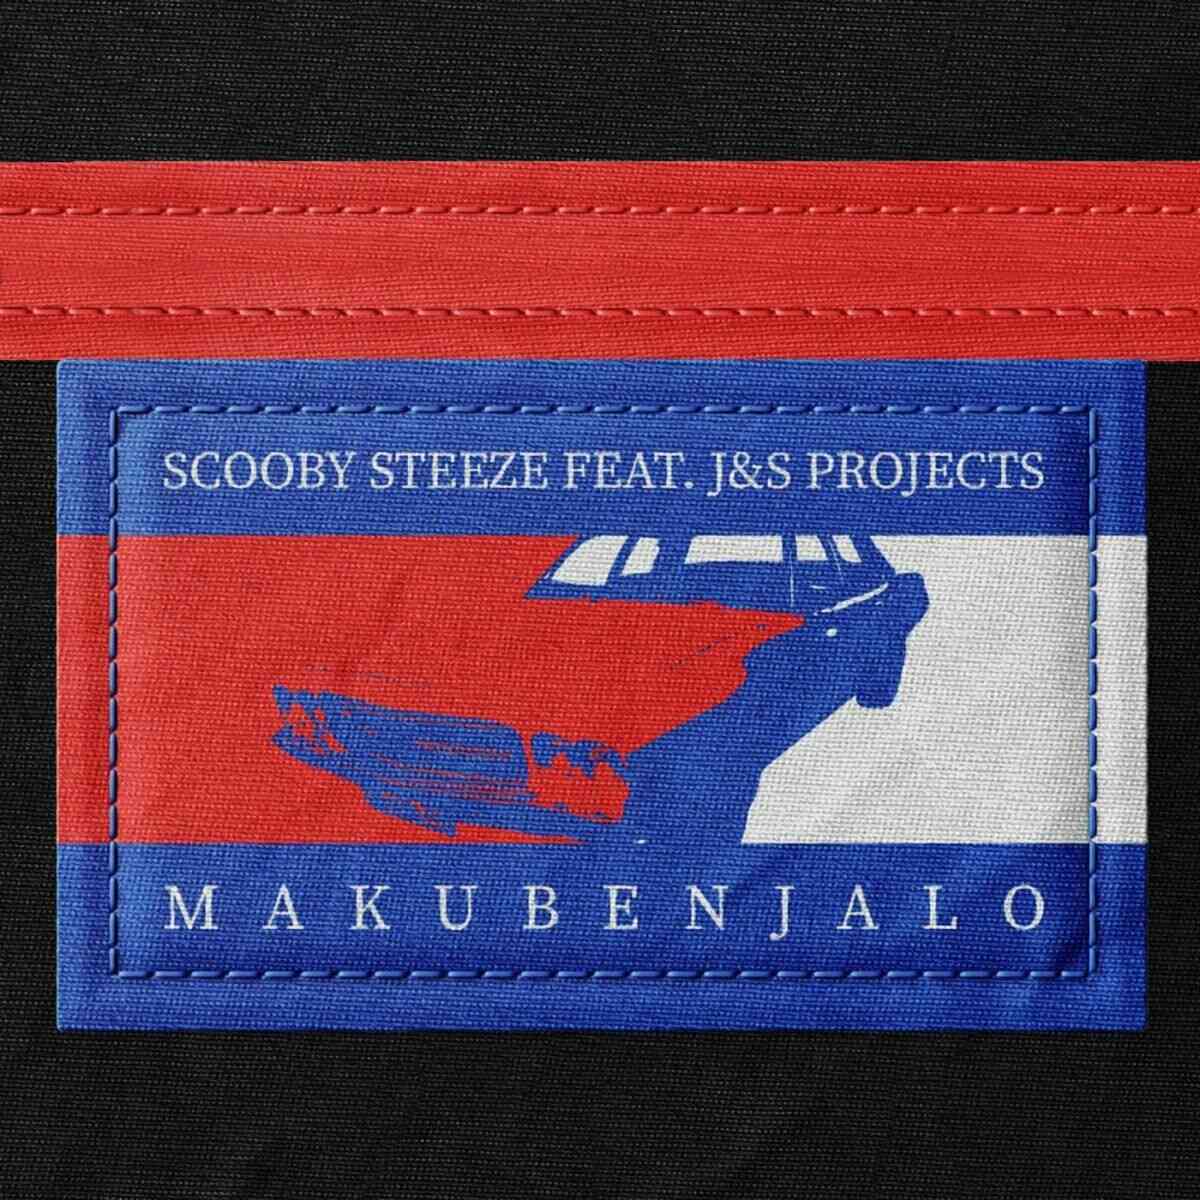 Scooby Steeze & J&S Projects - Makubenjalo